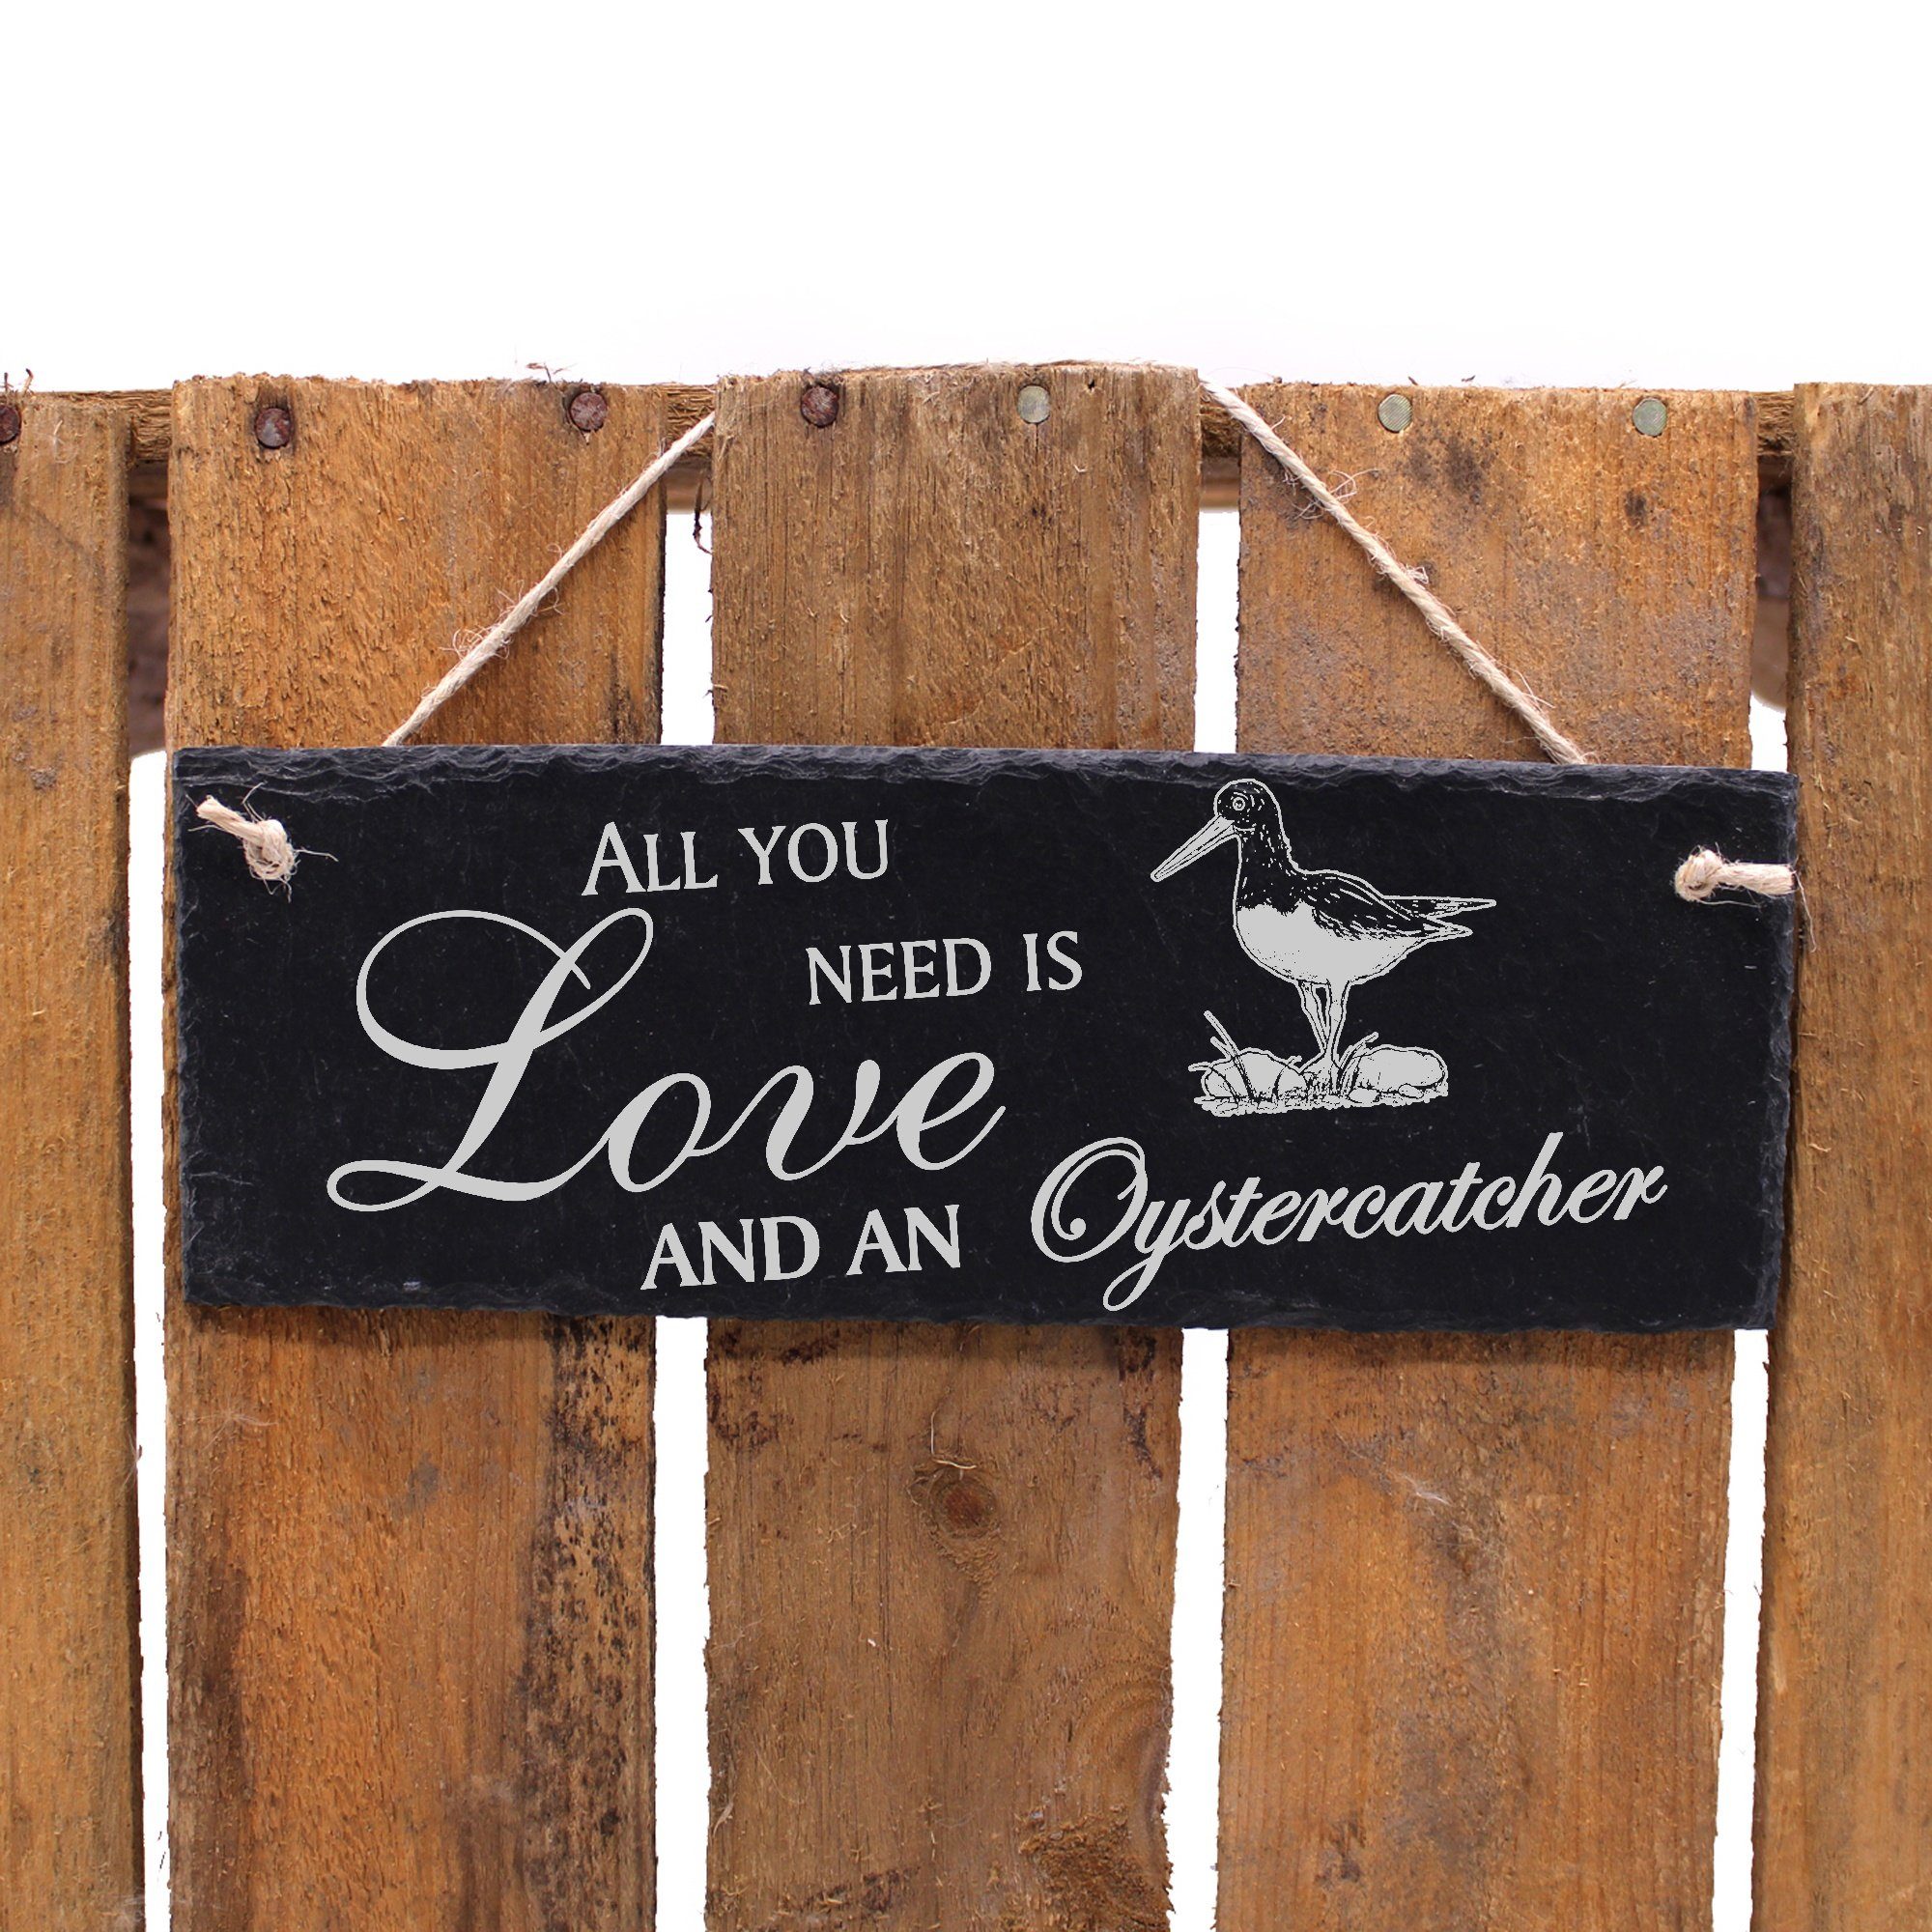 Dekolando Hängedekoration Austernfischer 22x8cm All need Love an is you and Oystercatcher